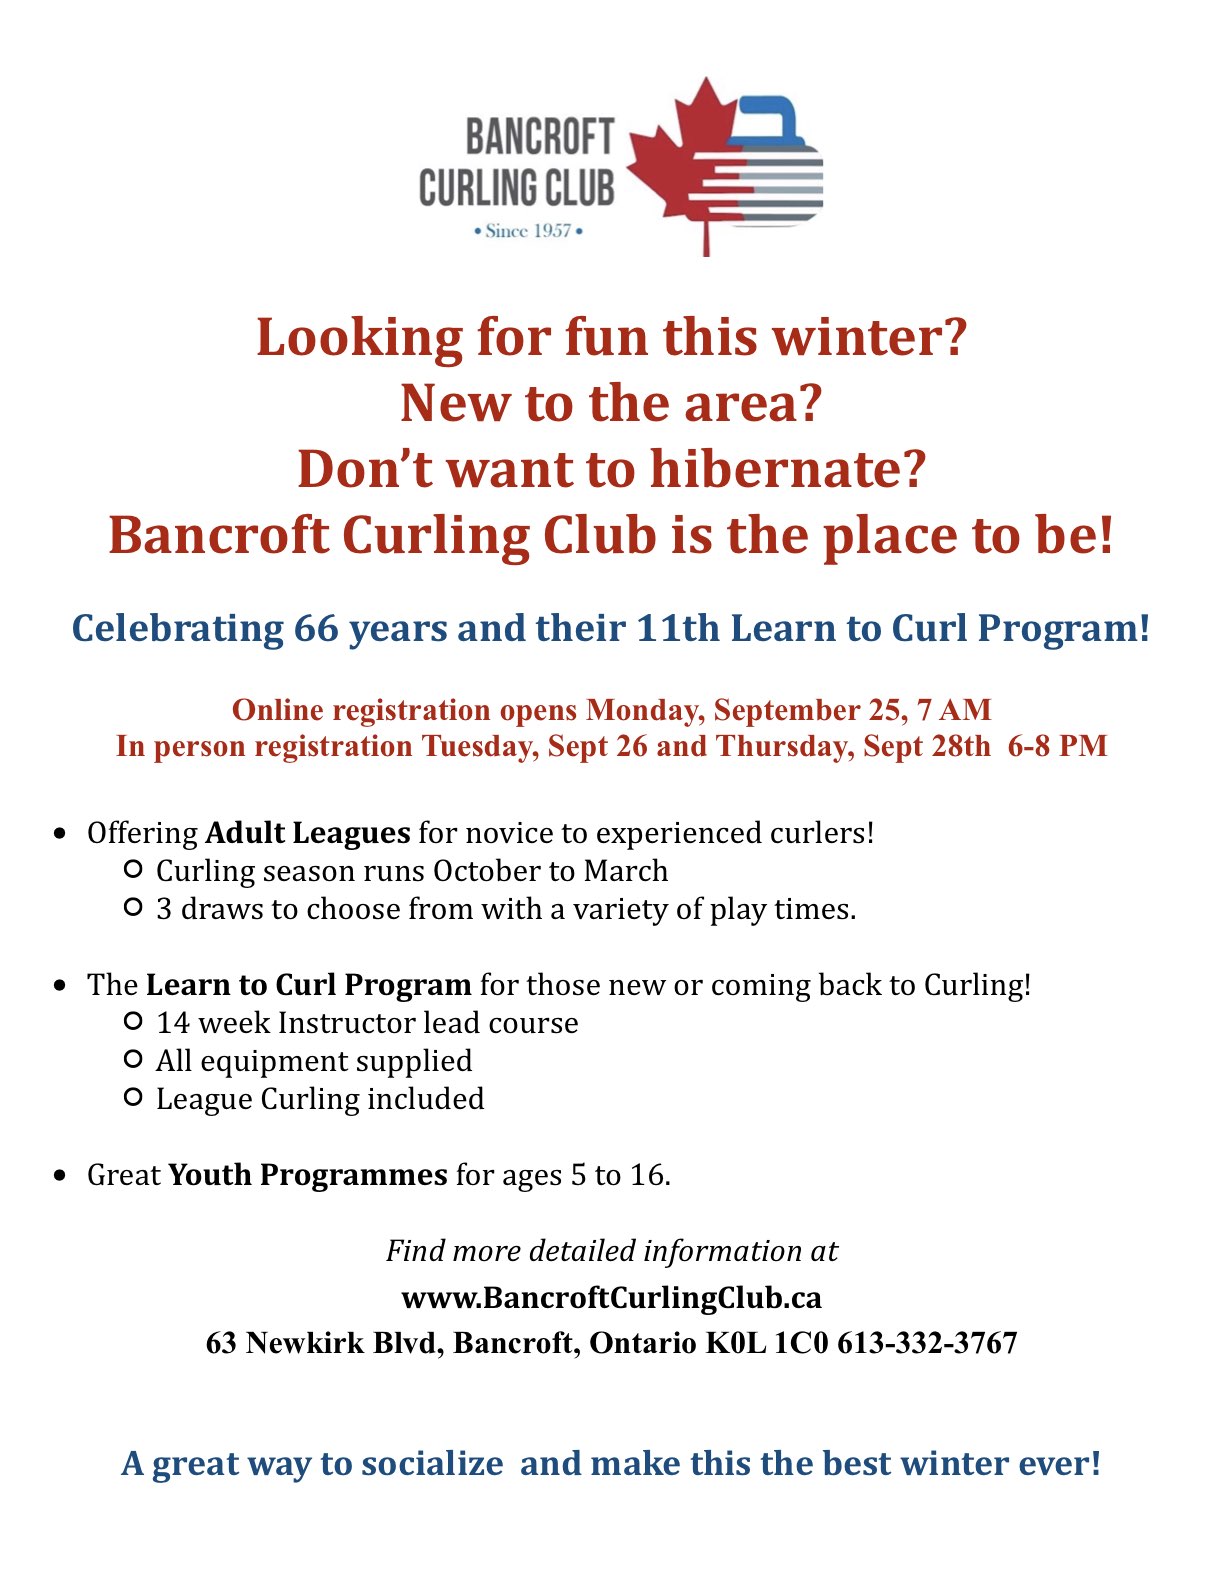 Bancroft Curling Club